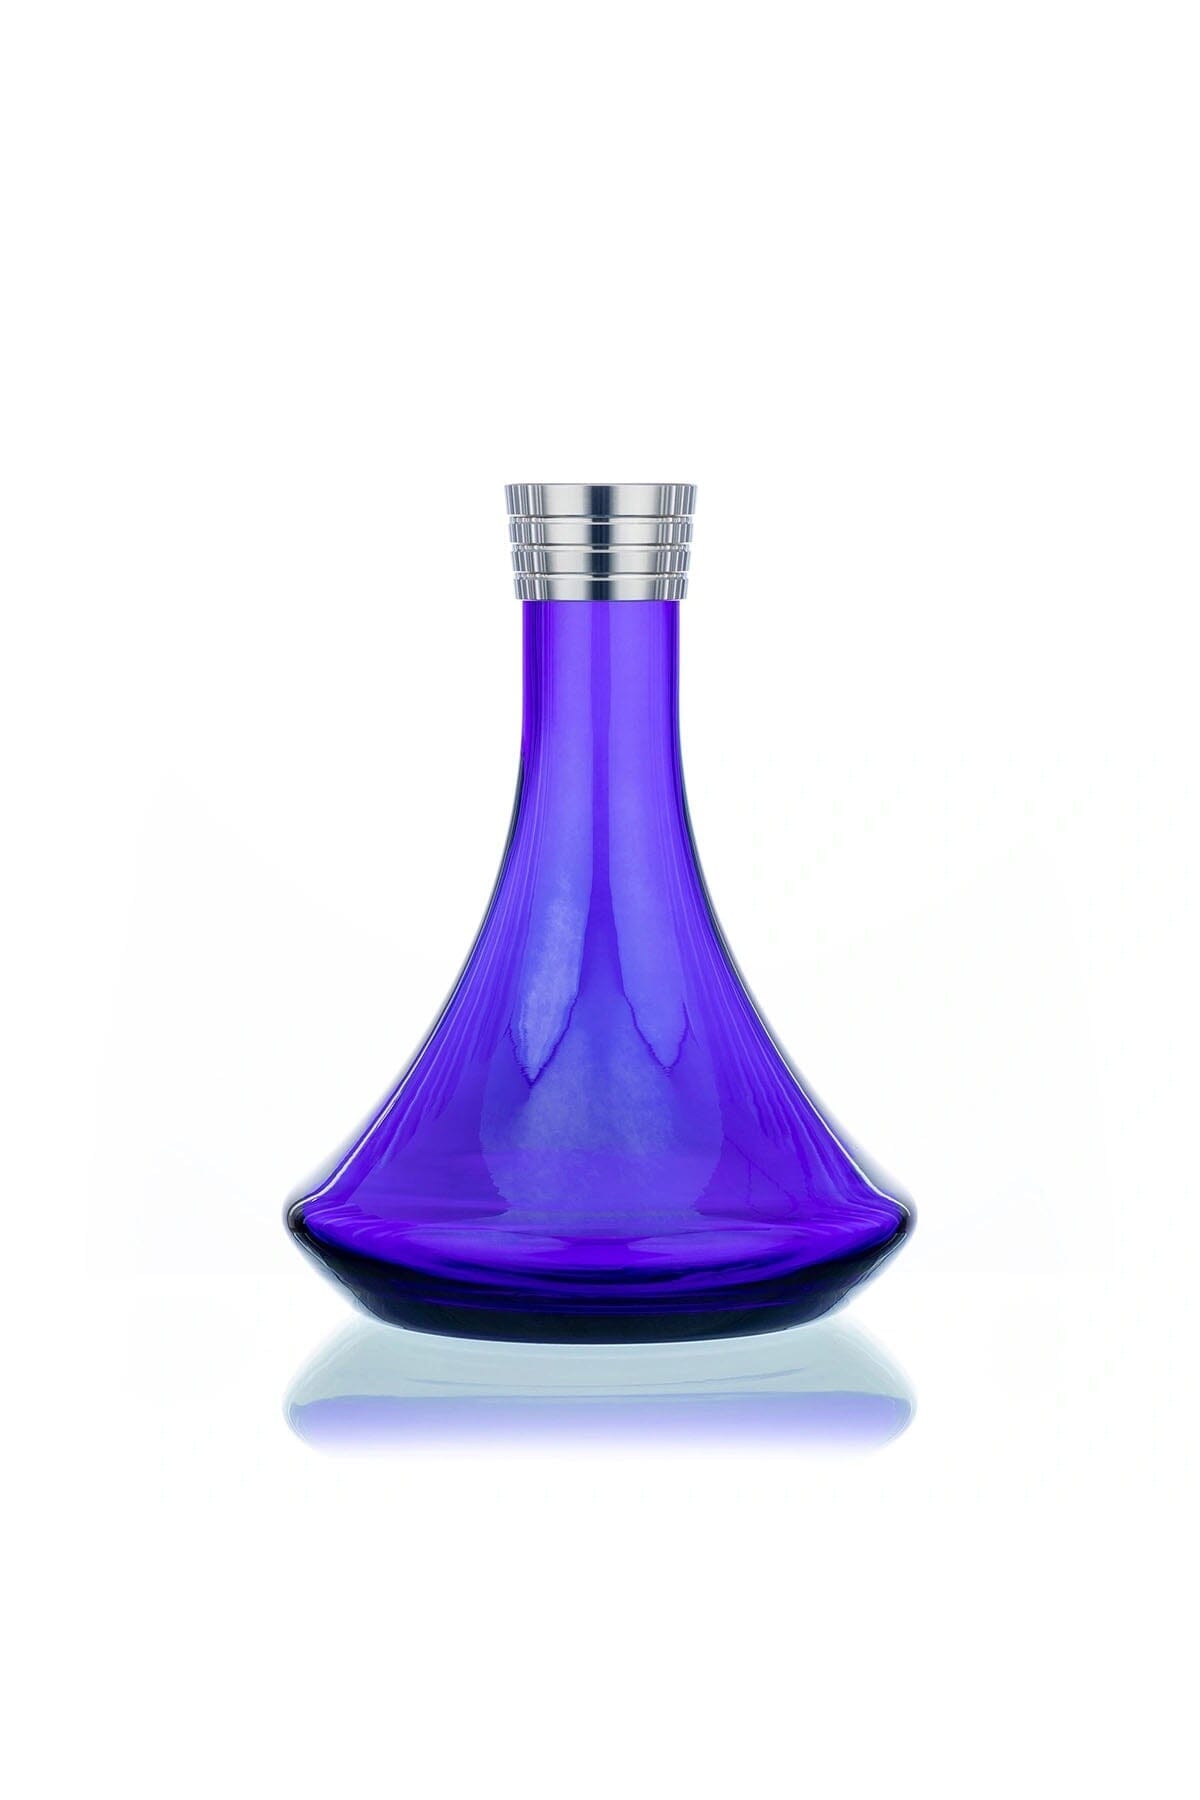 Aladin MVP 460 Gastro Model 1 Glas 1 - Shiny Blue